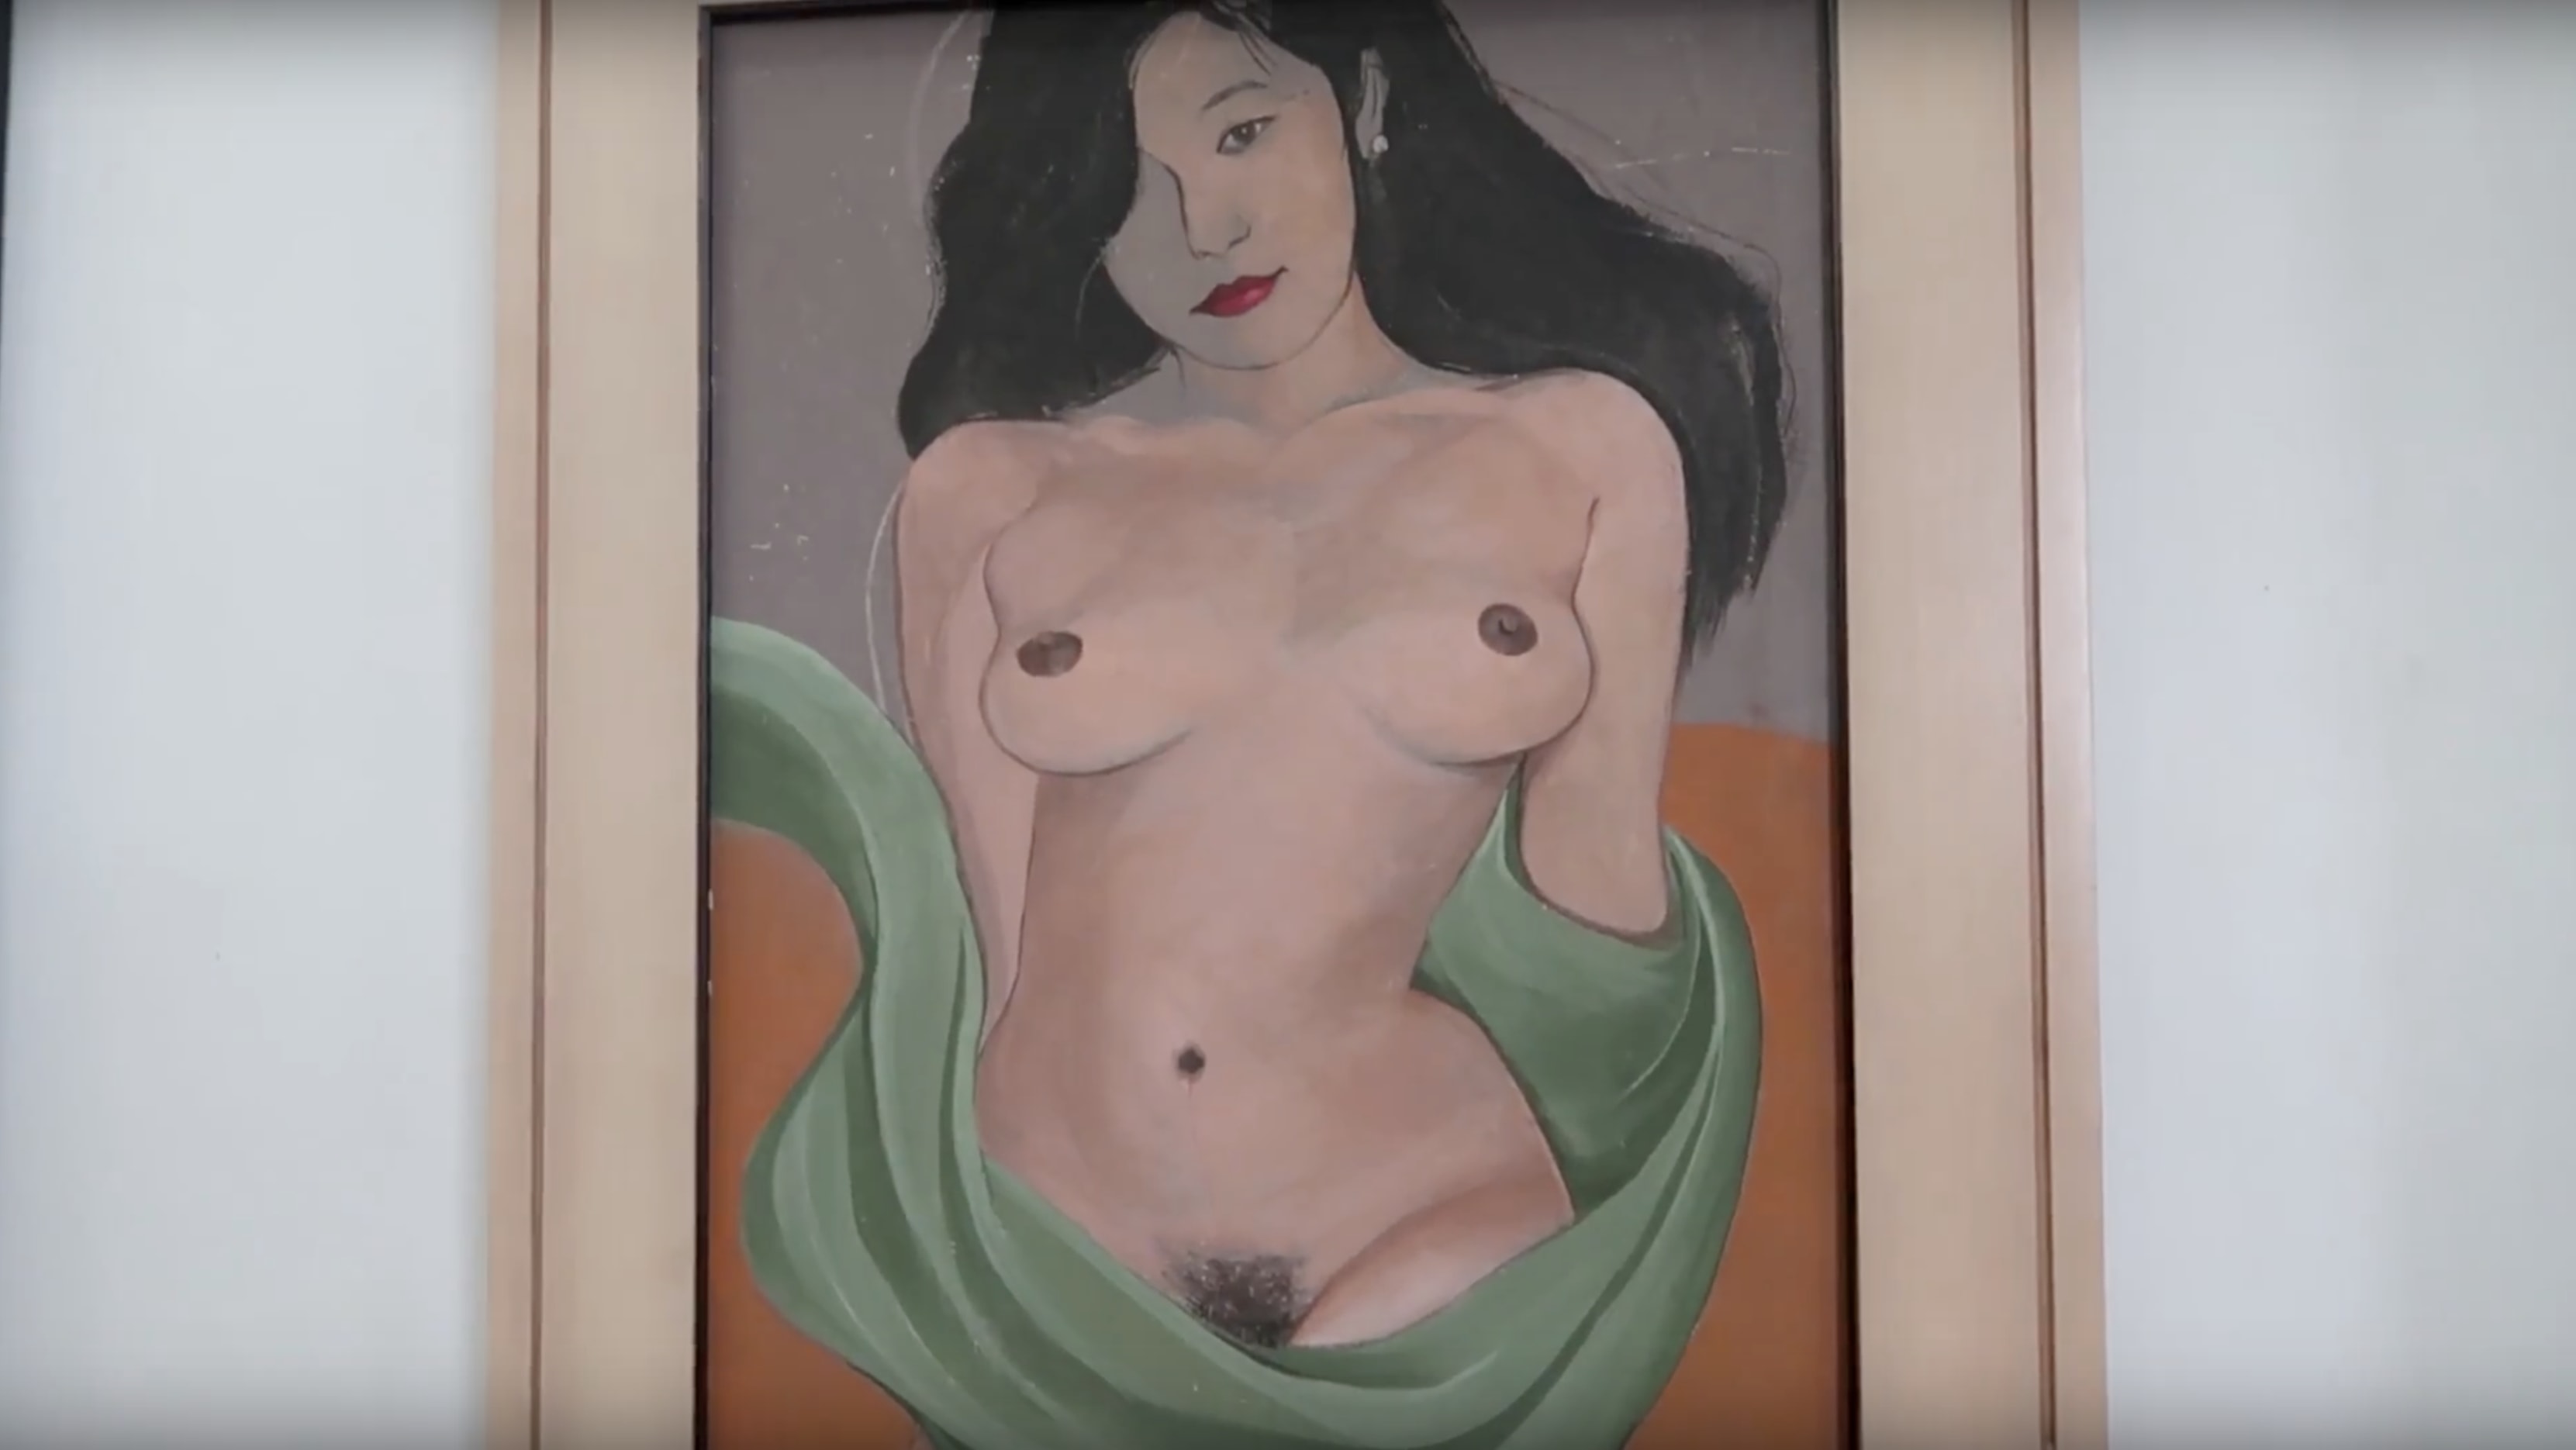 erotic painting in erotica gallery in bencab museum baguio city